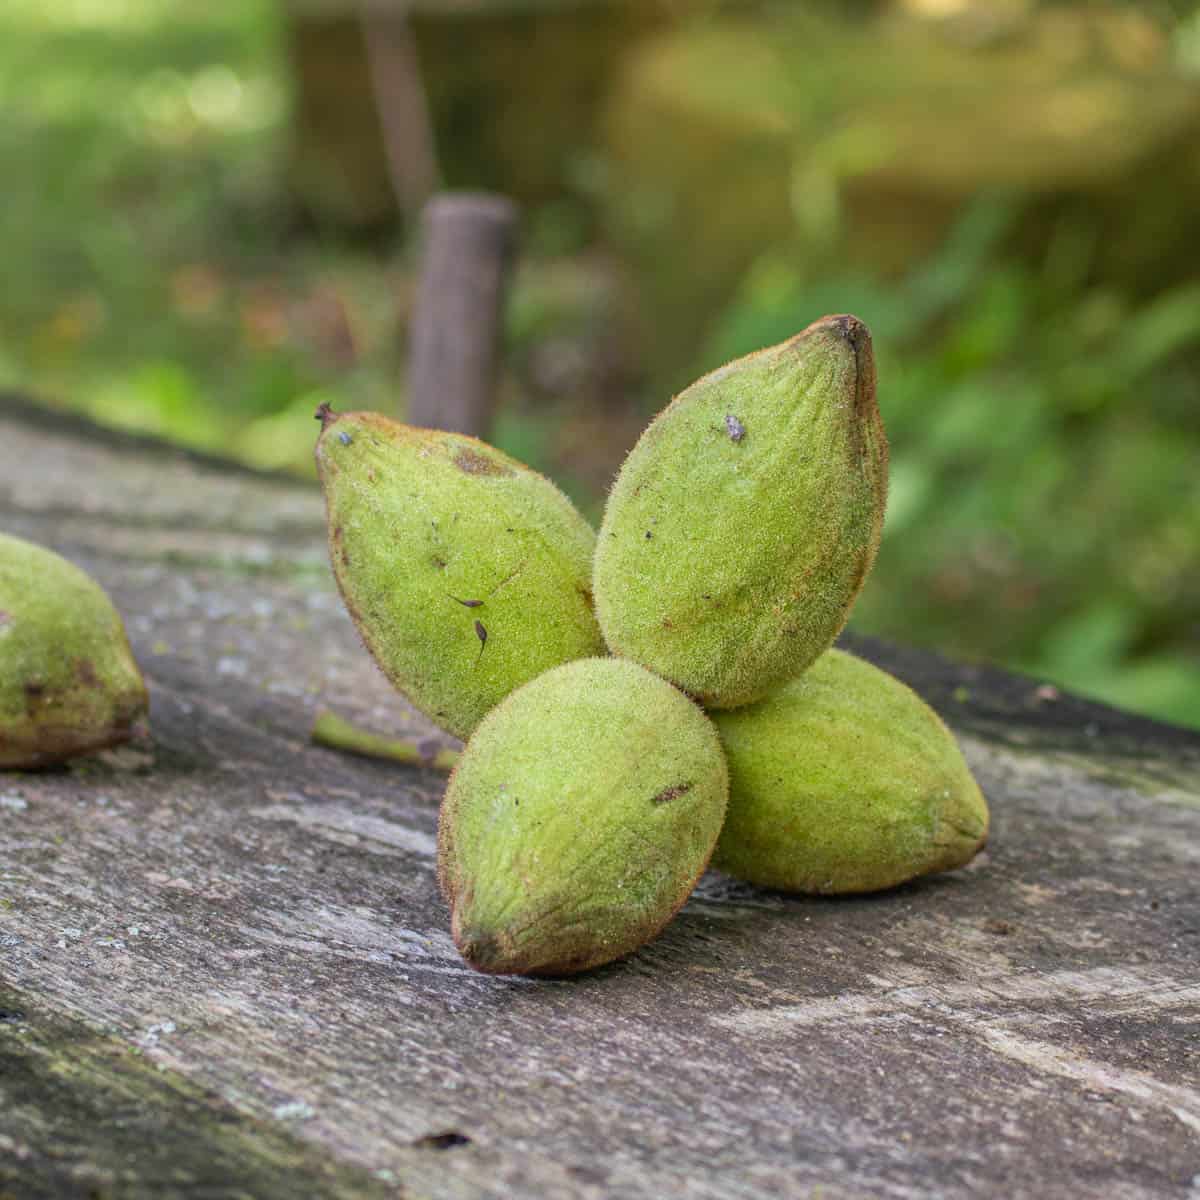 Butternuts, white walnuts, or Juglans cinerea